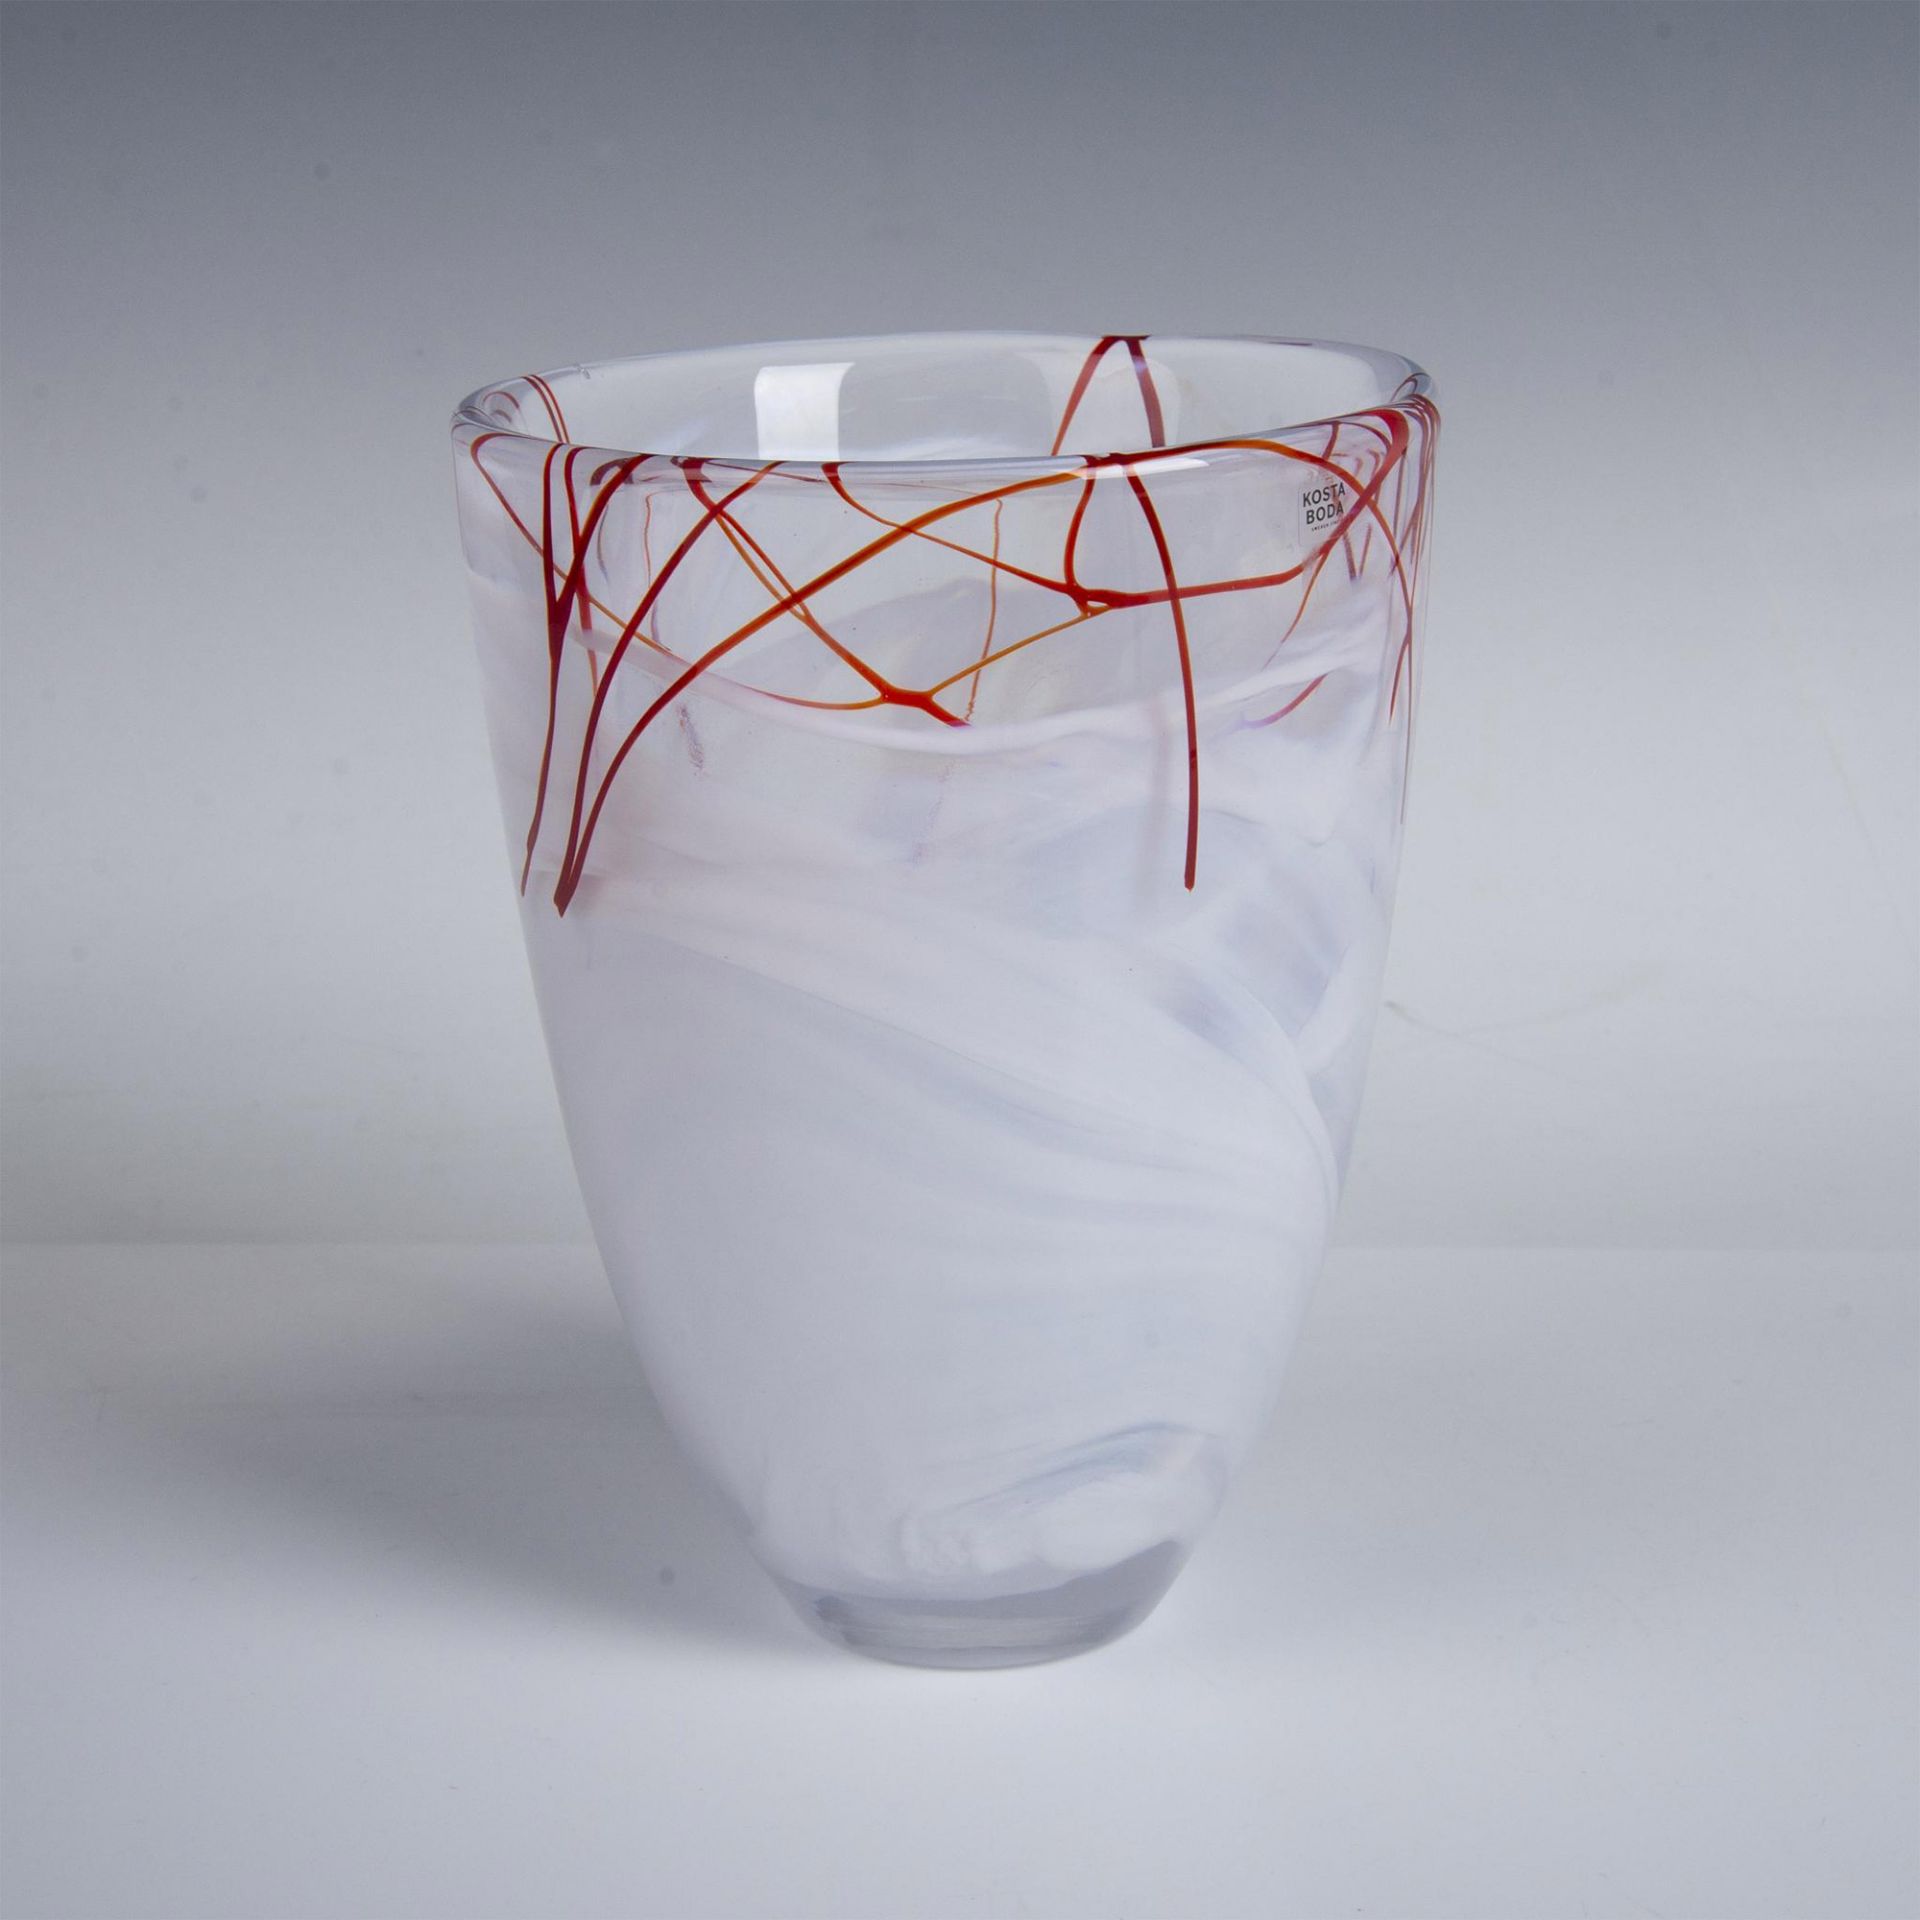 Kosta Boda by Anna Ehrner Art Glass Vase, Contrast - Image 4 of 5